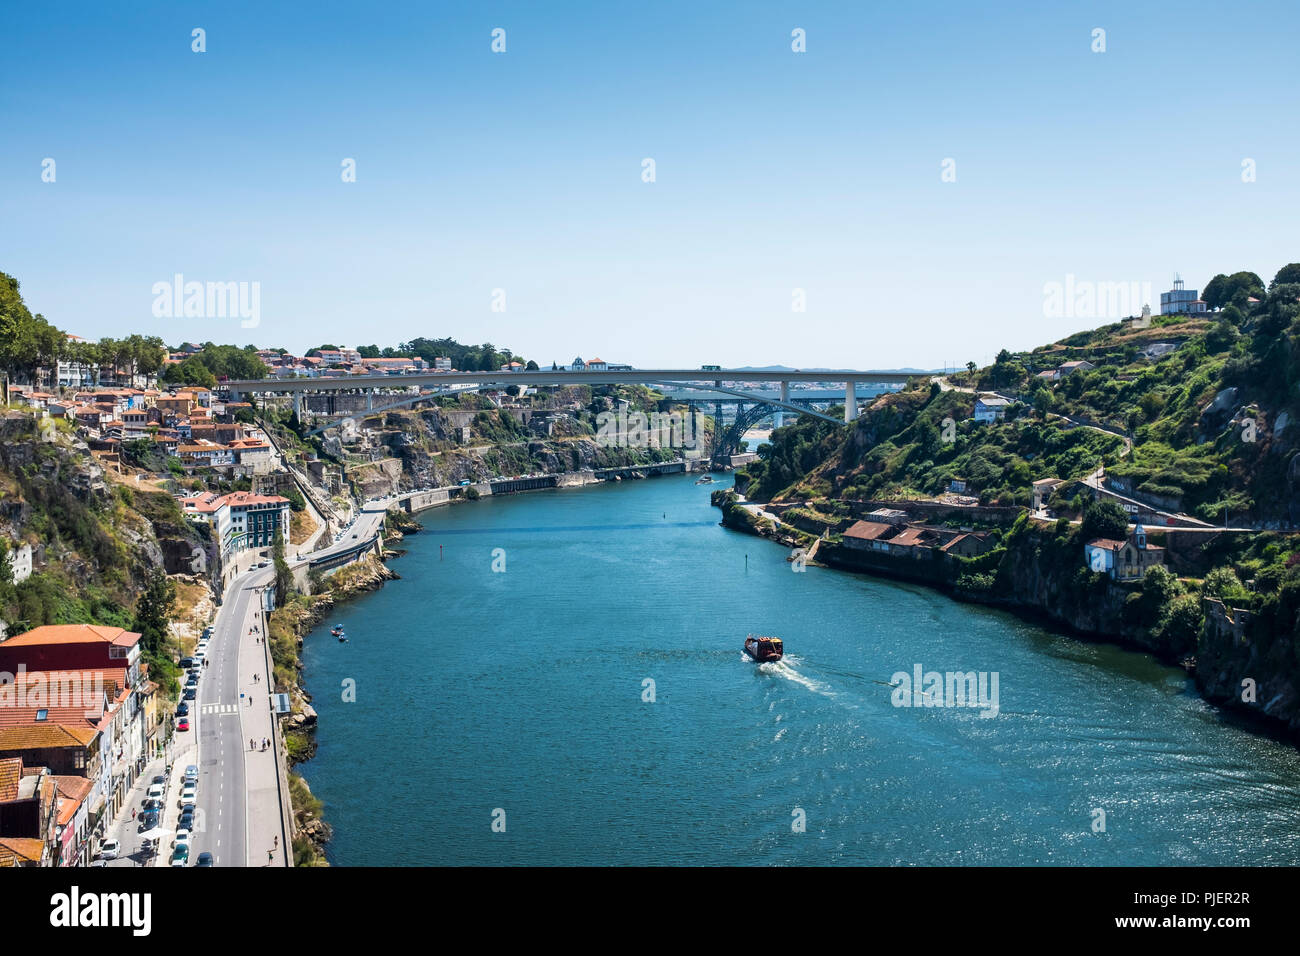 Vista desde el puente de Luis 1, Porto. Foto de stock